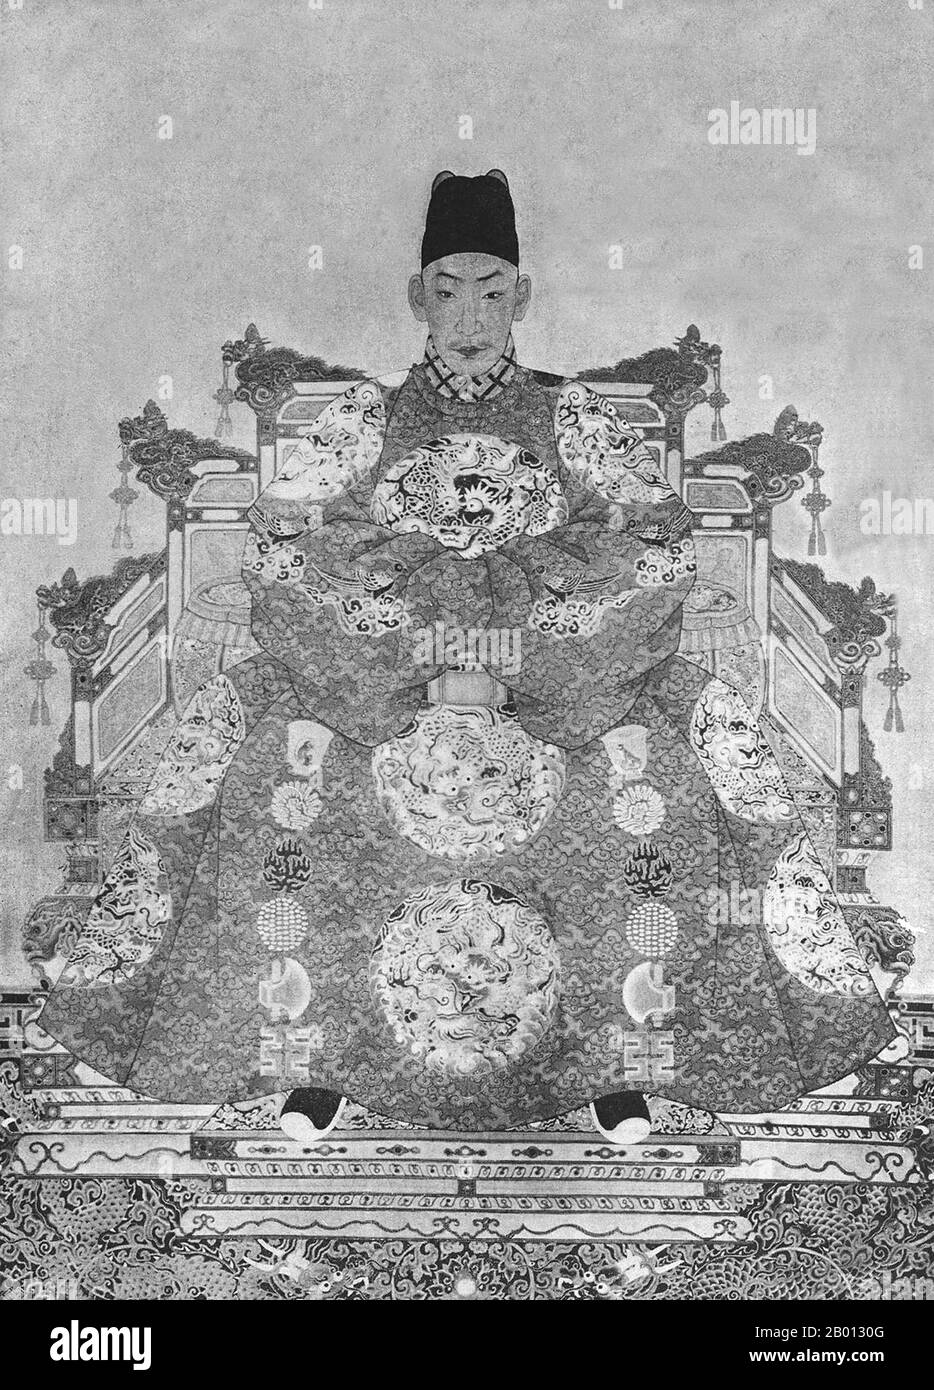 Cina: Imperatore Zhengde (27 ottobre 1491 - 20 aprile 1521), undicesimo sovrano della dinastia Ming (r. 1505-1521). Pittura a chiocciola sospesa, XVI-XVII secolo. L'imperatore Zhengde (1491-1521), nome personale Zhu Houzhao e nome del tempio Wuzong, fu l'undicesimo imperatore della dinastia Ming. Il suo nome d'epoca significa "rettificazione della virtù". Zhengde trascurò completamente i suoi doveri imperiali, iniziando una pericolosa tendenza che avrebbe colpito i futuri imperatori Ming. L'abbandono dei doveri ufficiali per i piaceri personali porterebbe lentamente all'ascesa di eunuchi potenti che portarono alla caduta della dinastia Ming. Foto Stock